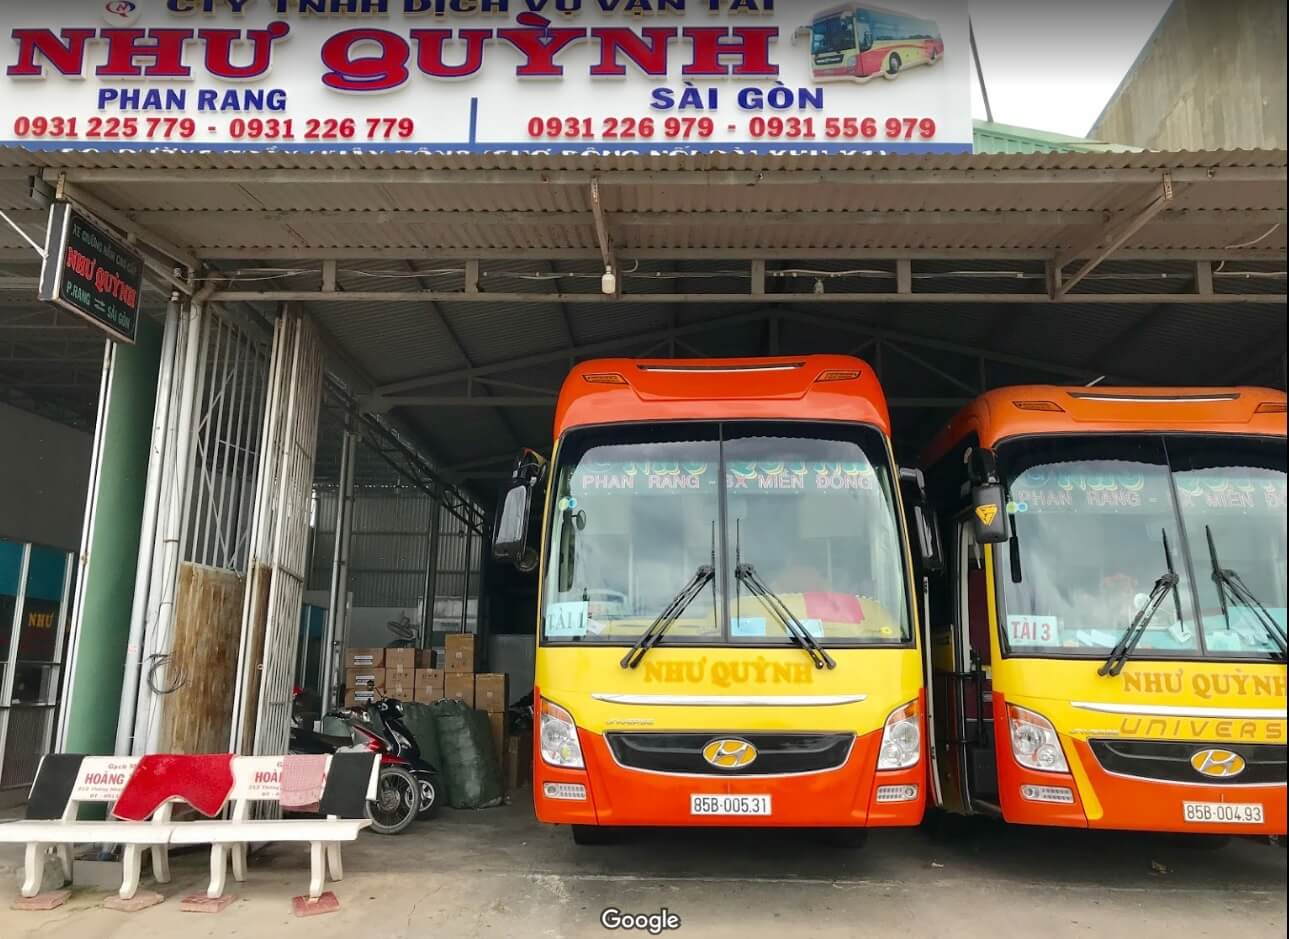 Tổng hợp nhà xe Ninh Thuận - Review xác thực chất lượng các nhà xe